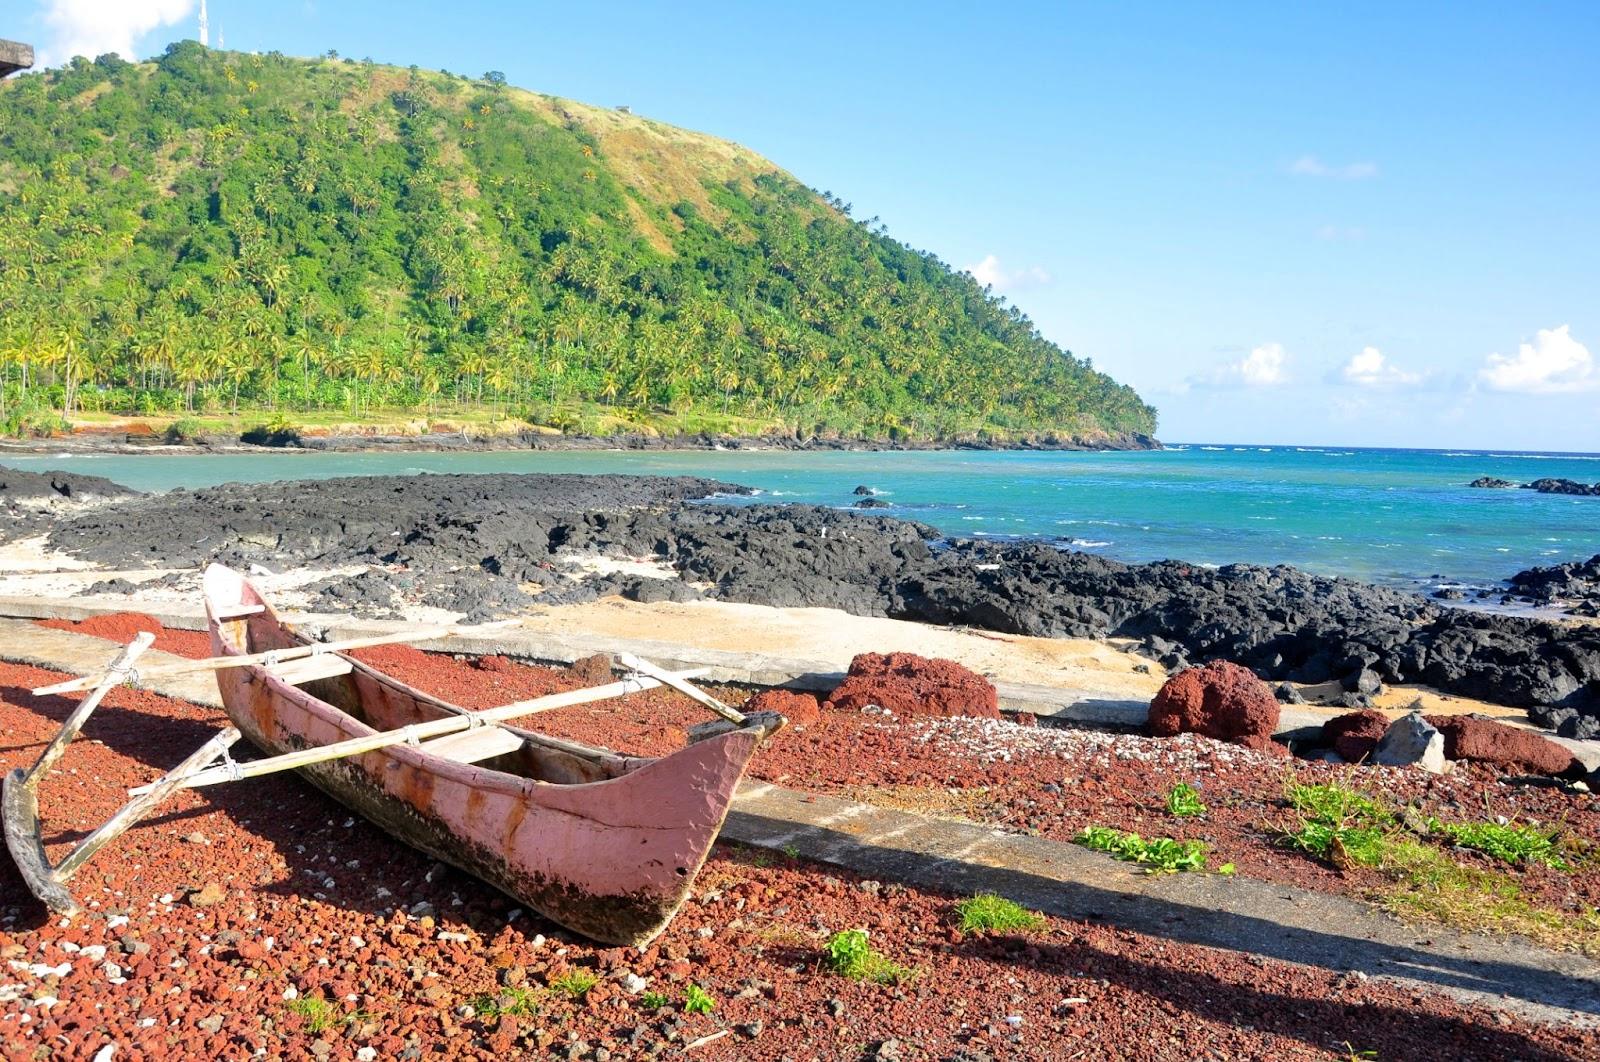 Mountain and sea view in Iconi town on Comoros island (N'gazidja)